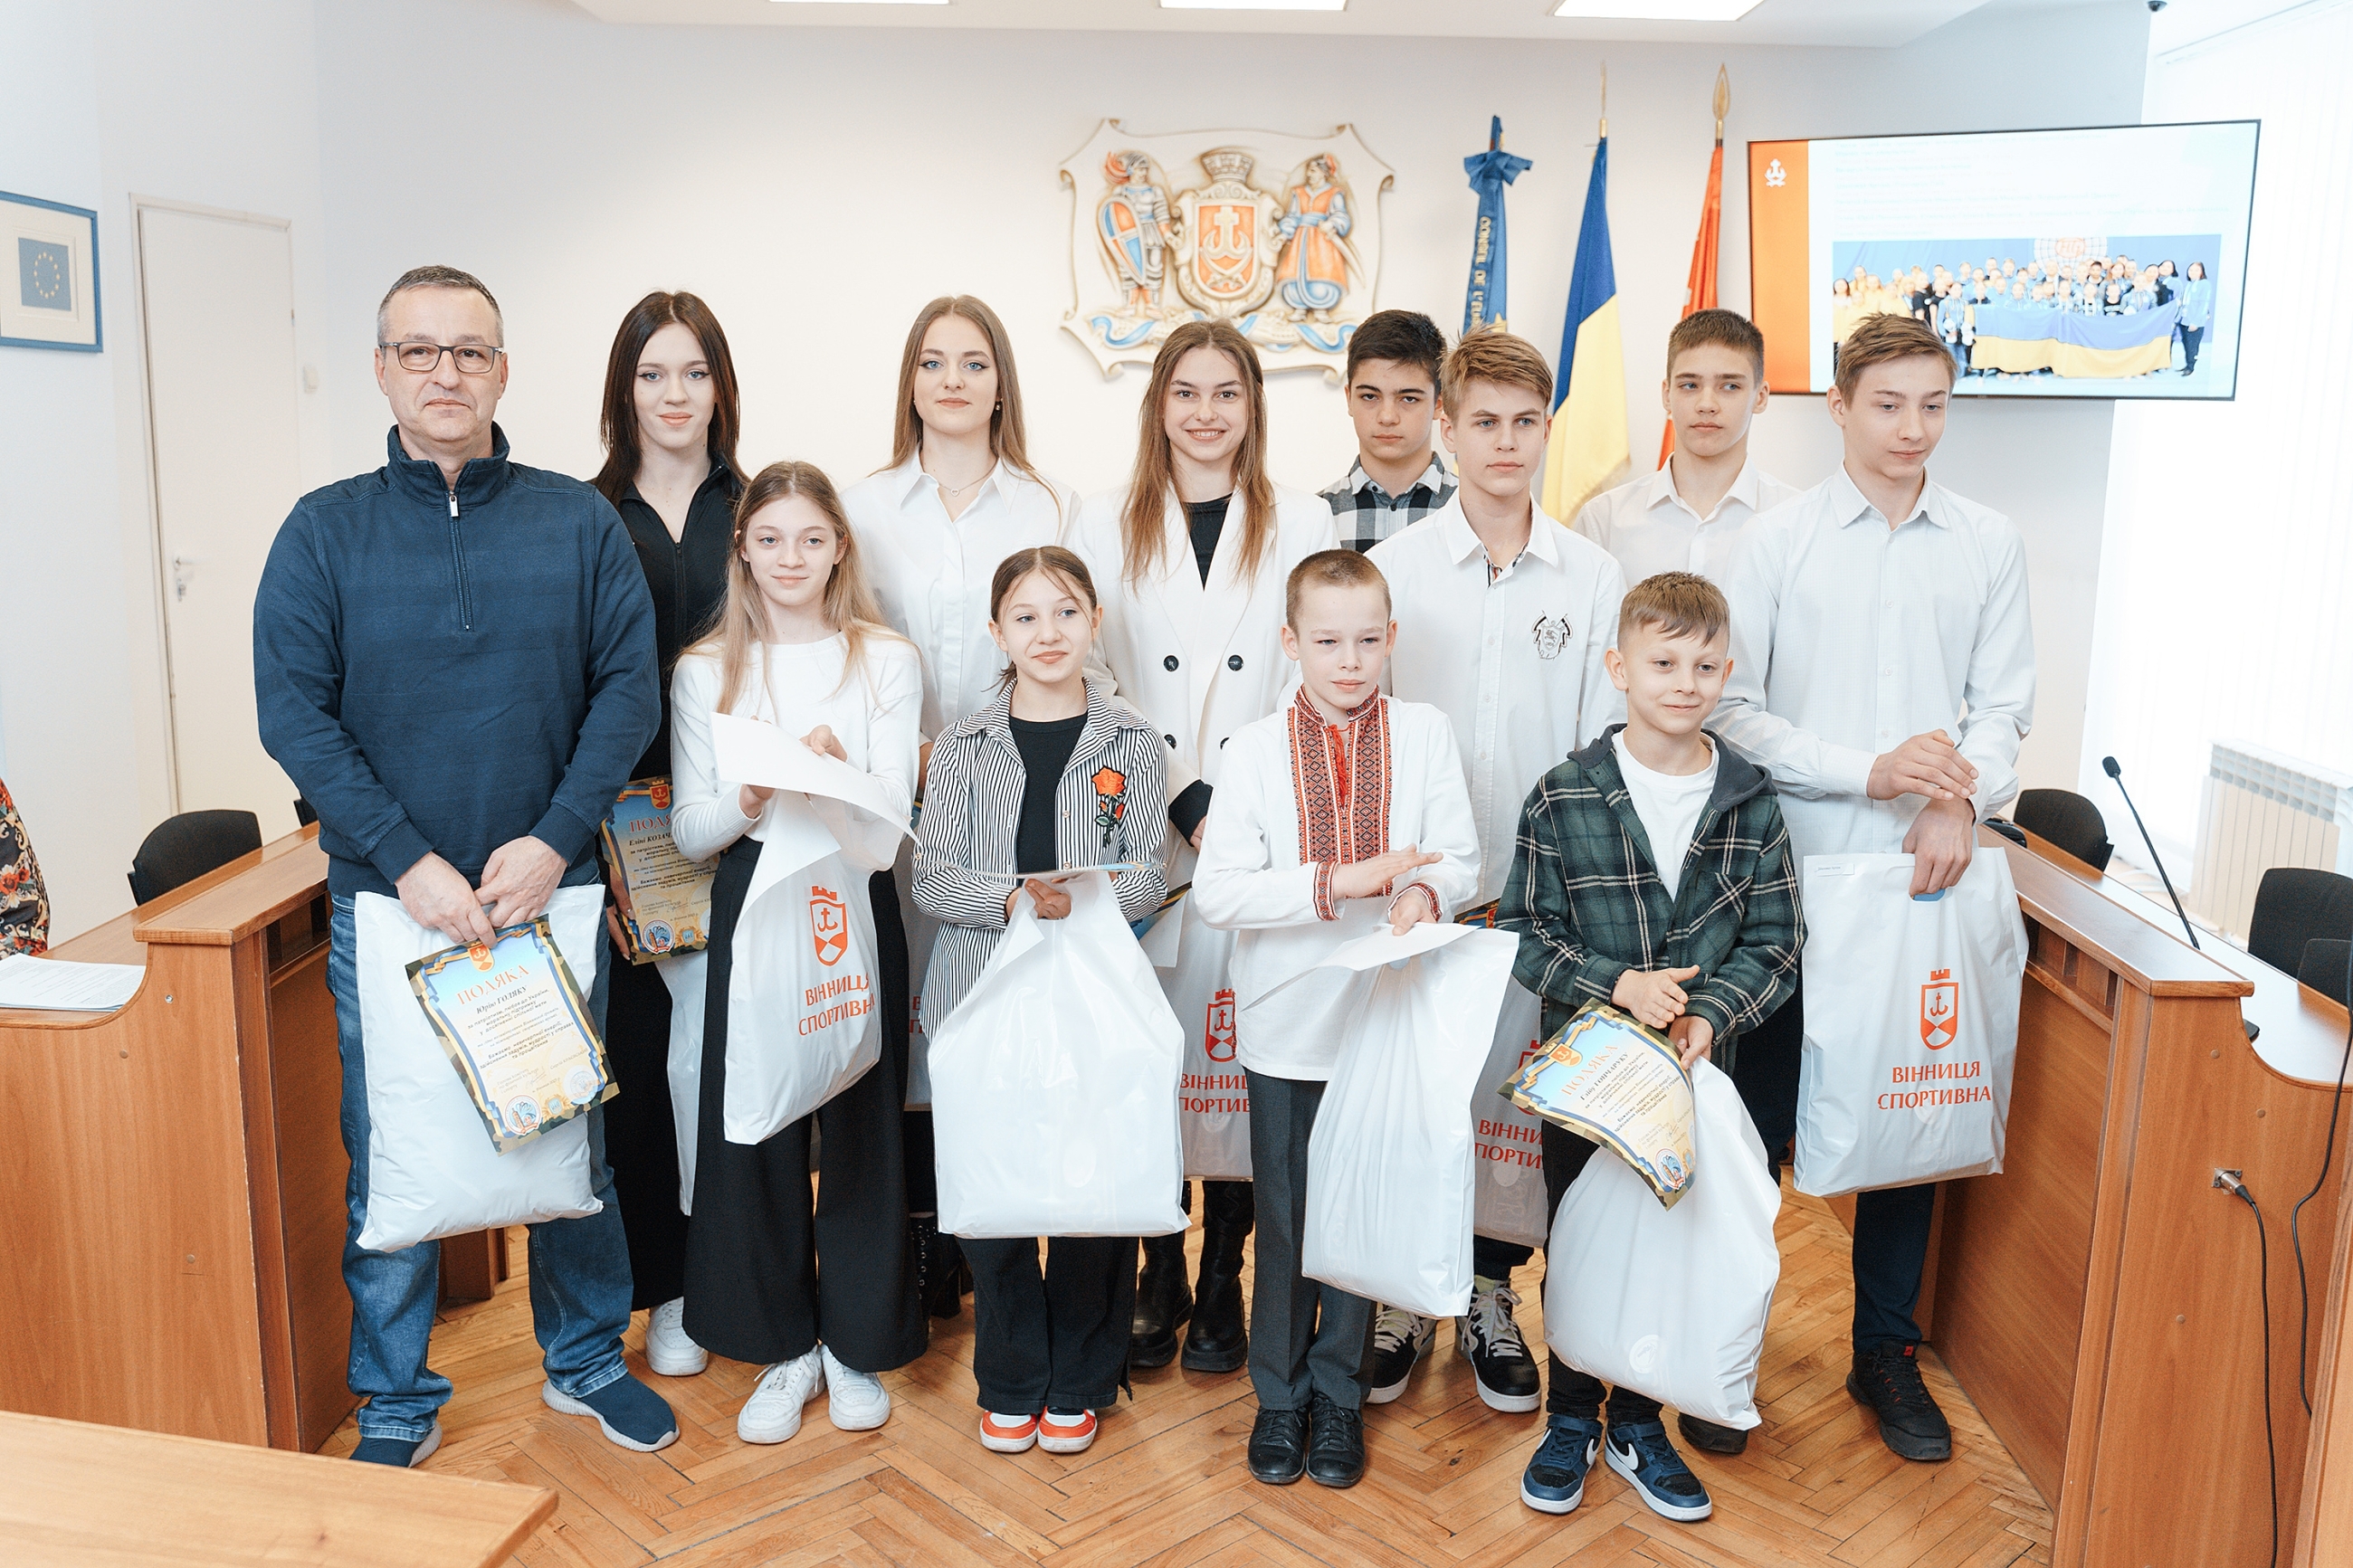 Кращих спортсменів Вінниці нагородили подяками міської ради